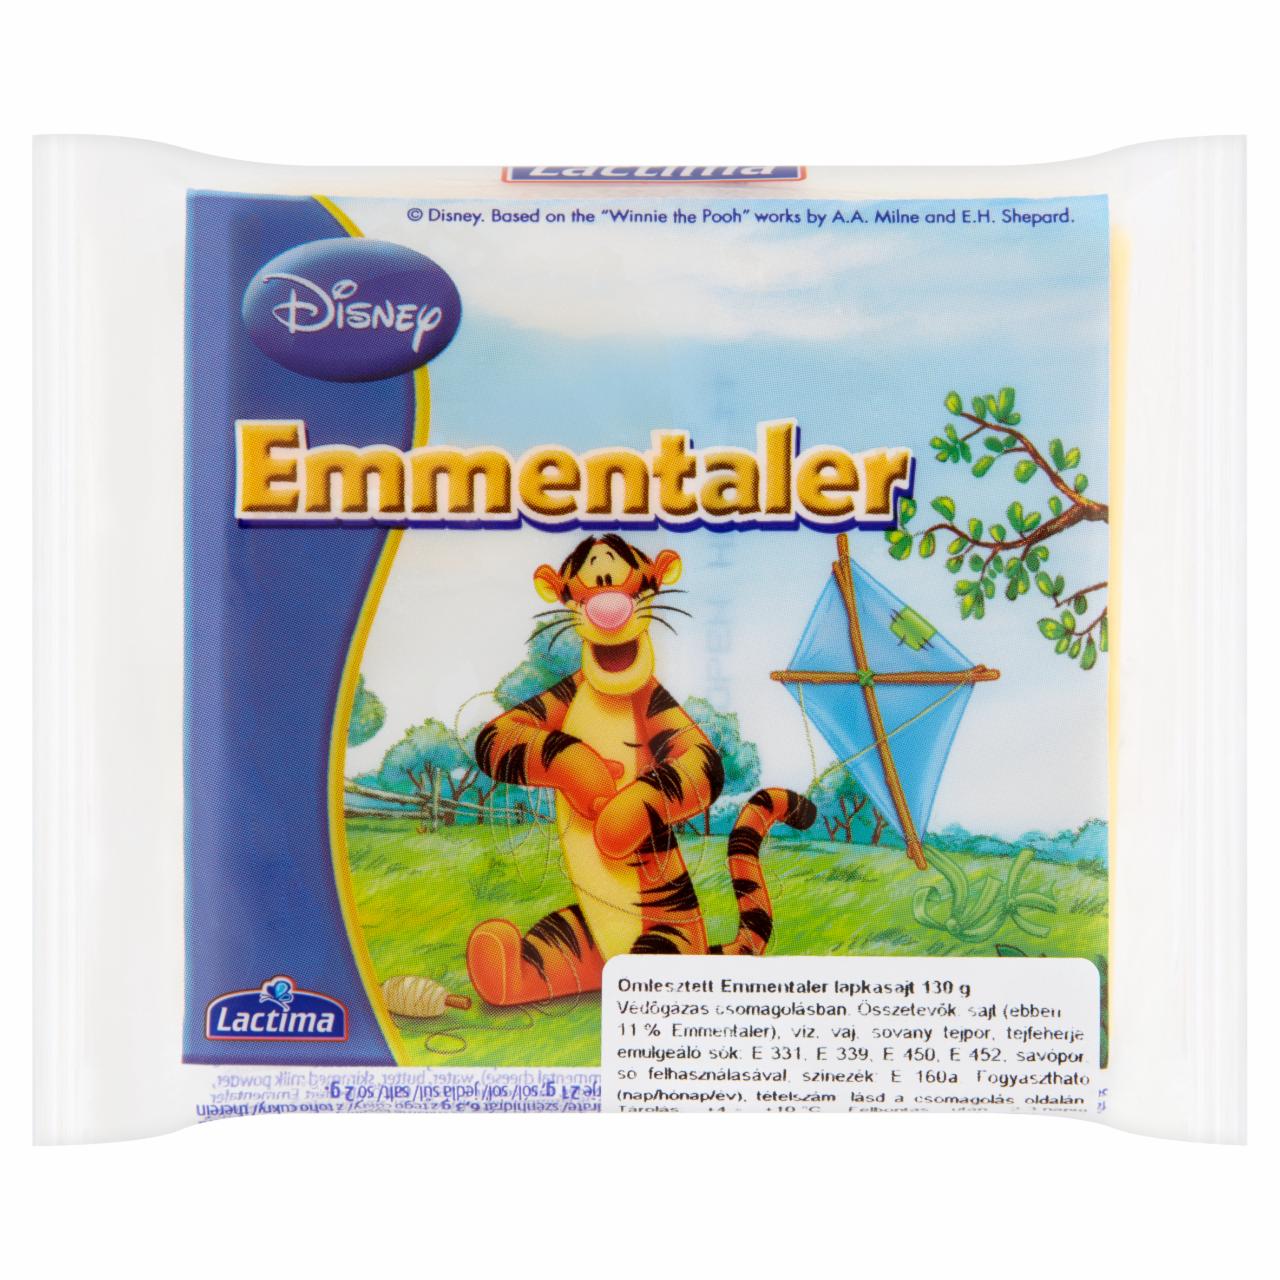 Képek - Lactima Disney ömlesztett emmentaler lapkasajt 130 g